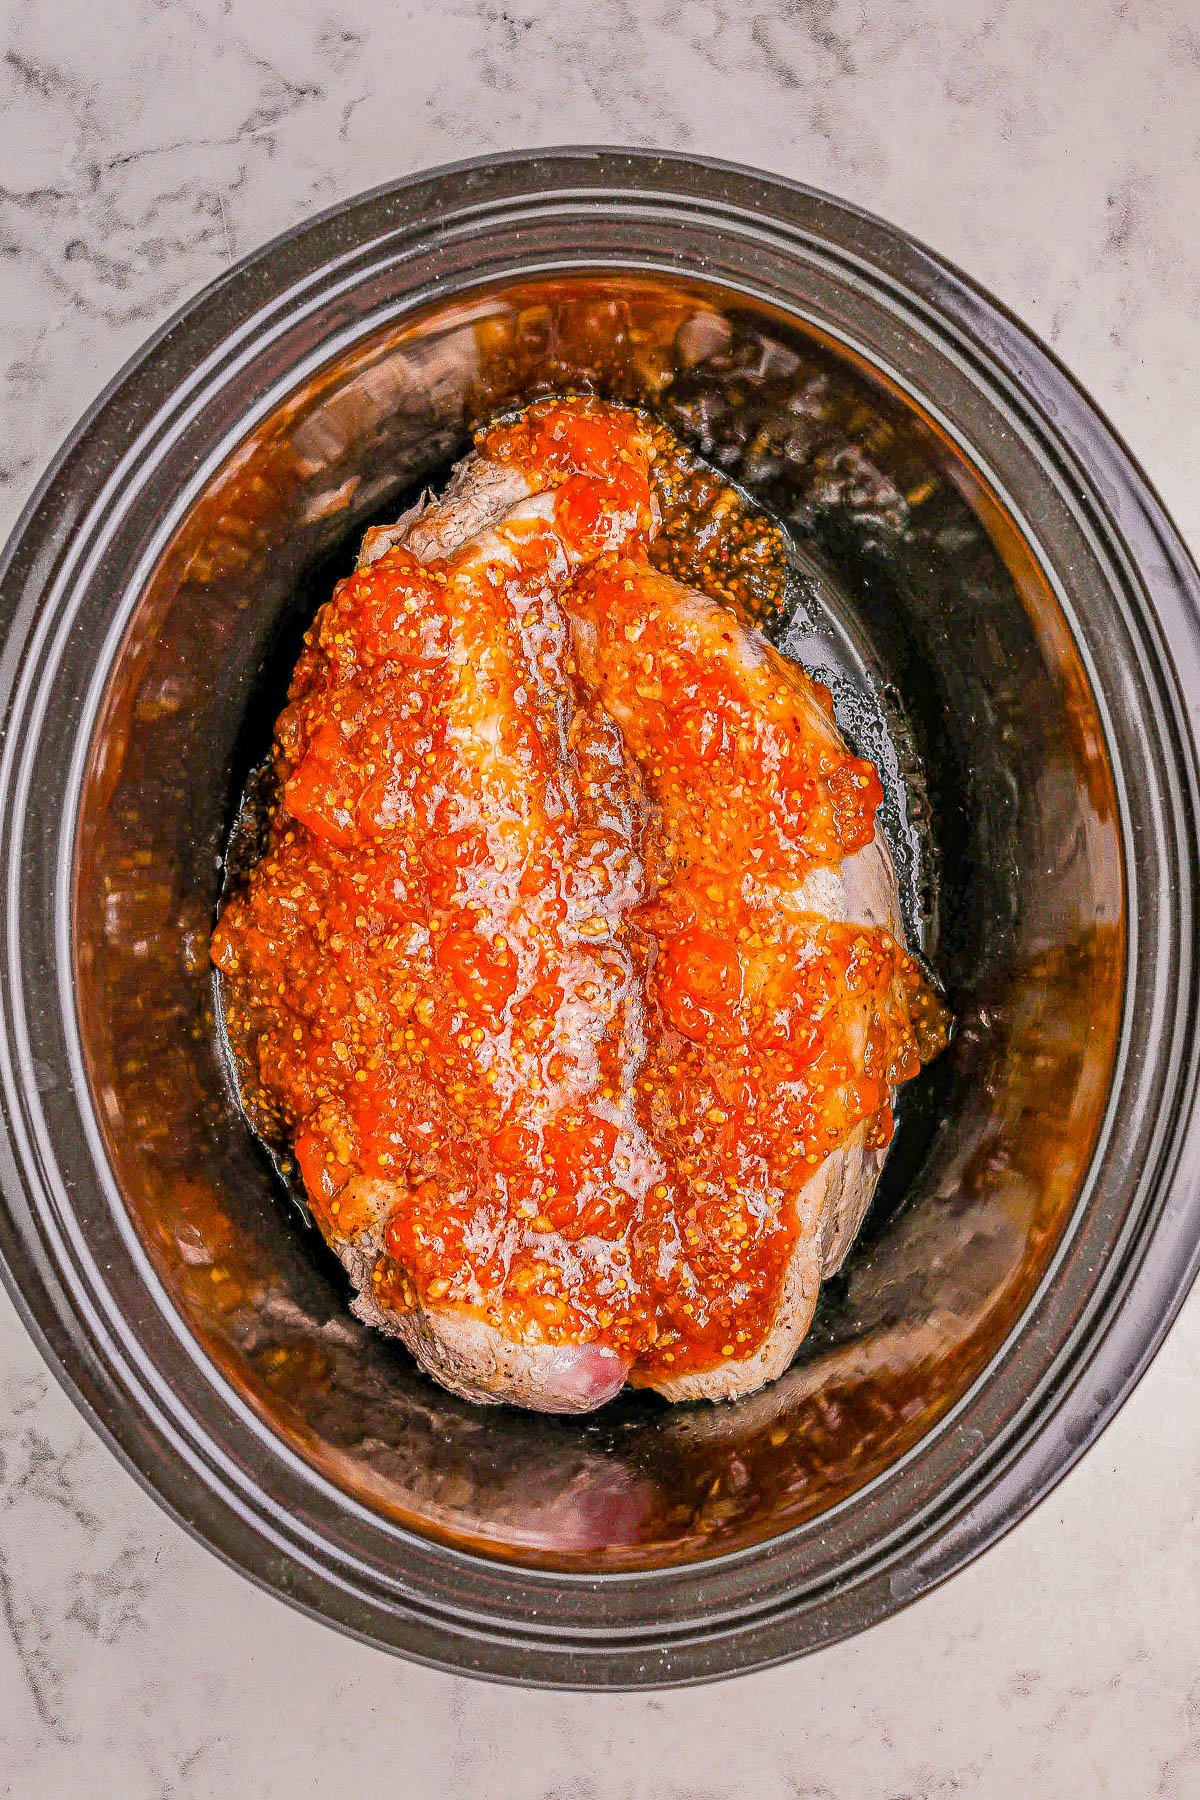 A seasoned pork roast in a slow cooker.